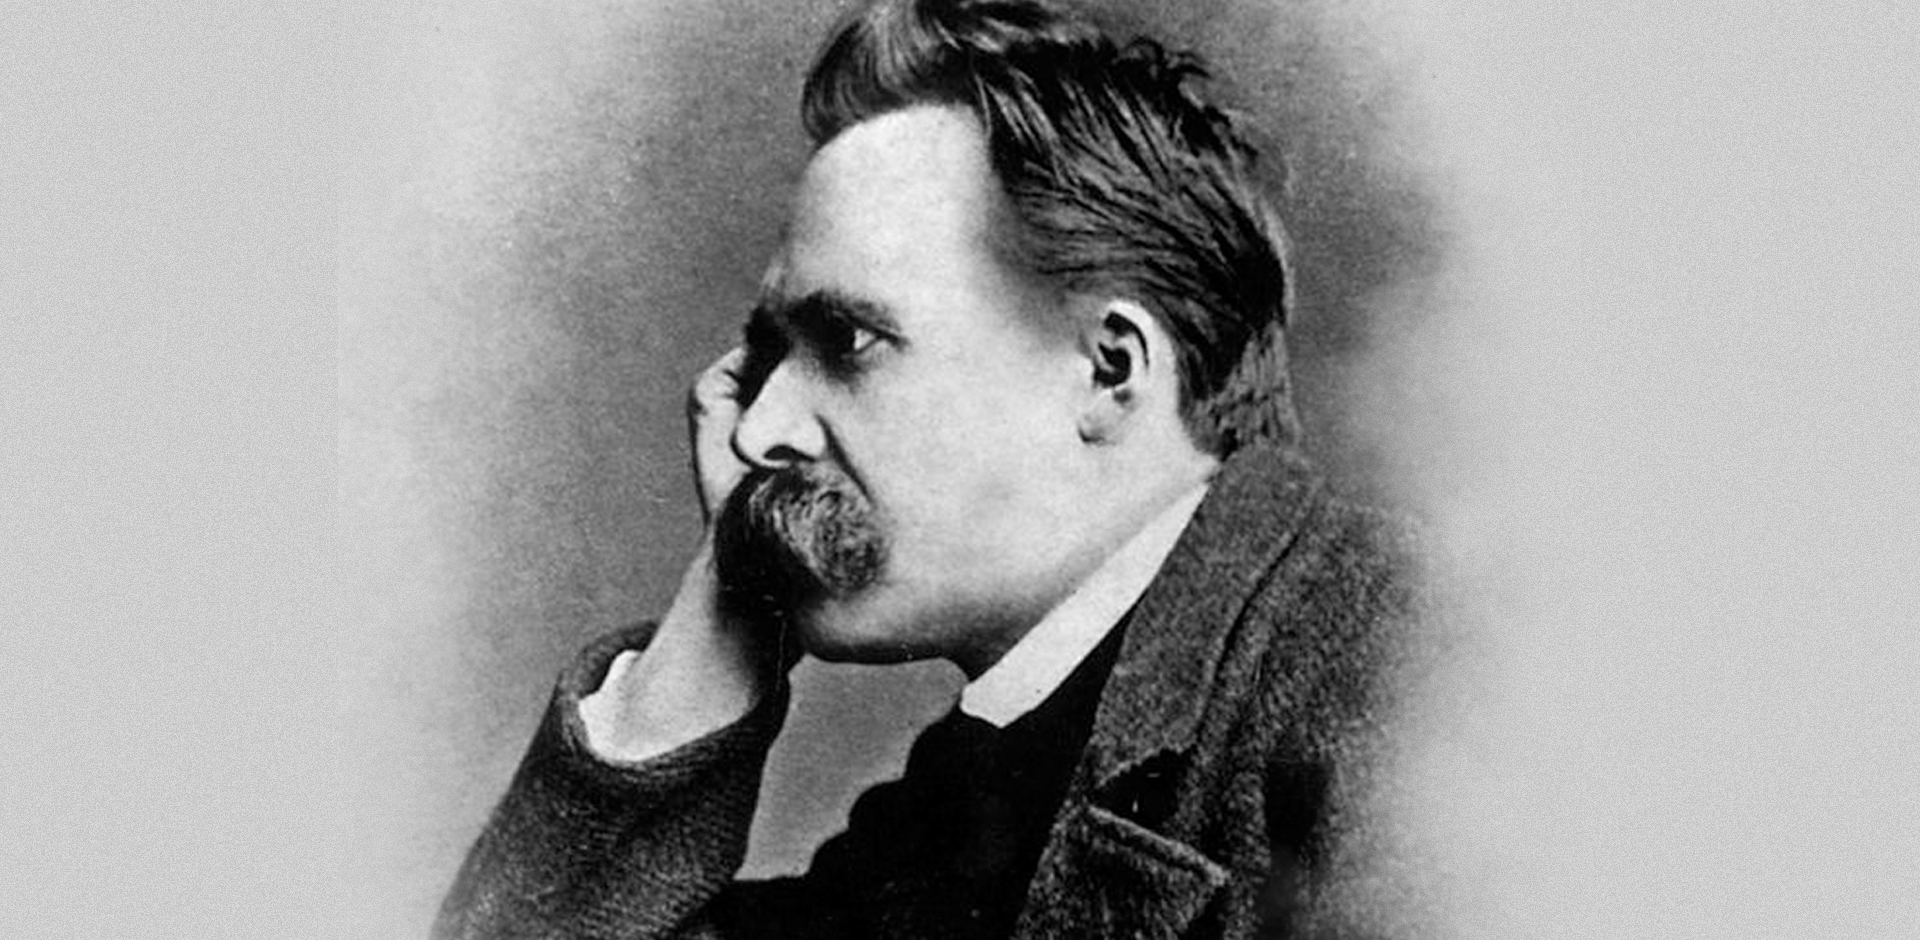 Porque, note-se bem: foi precisamente Friedrich Nietzsche - Pensador